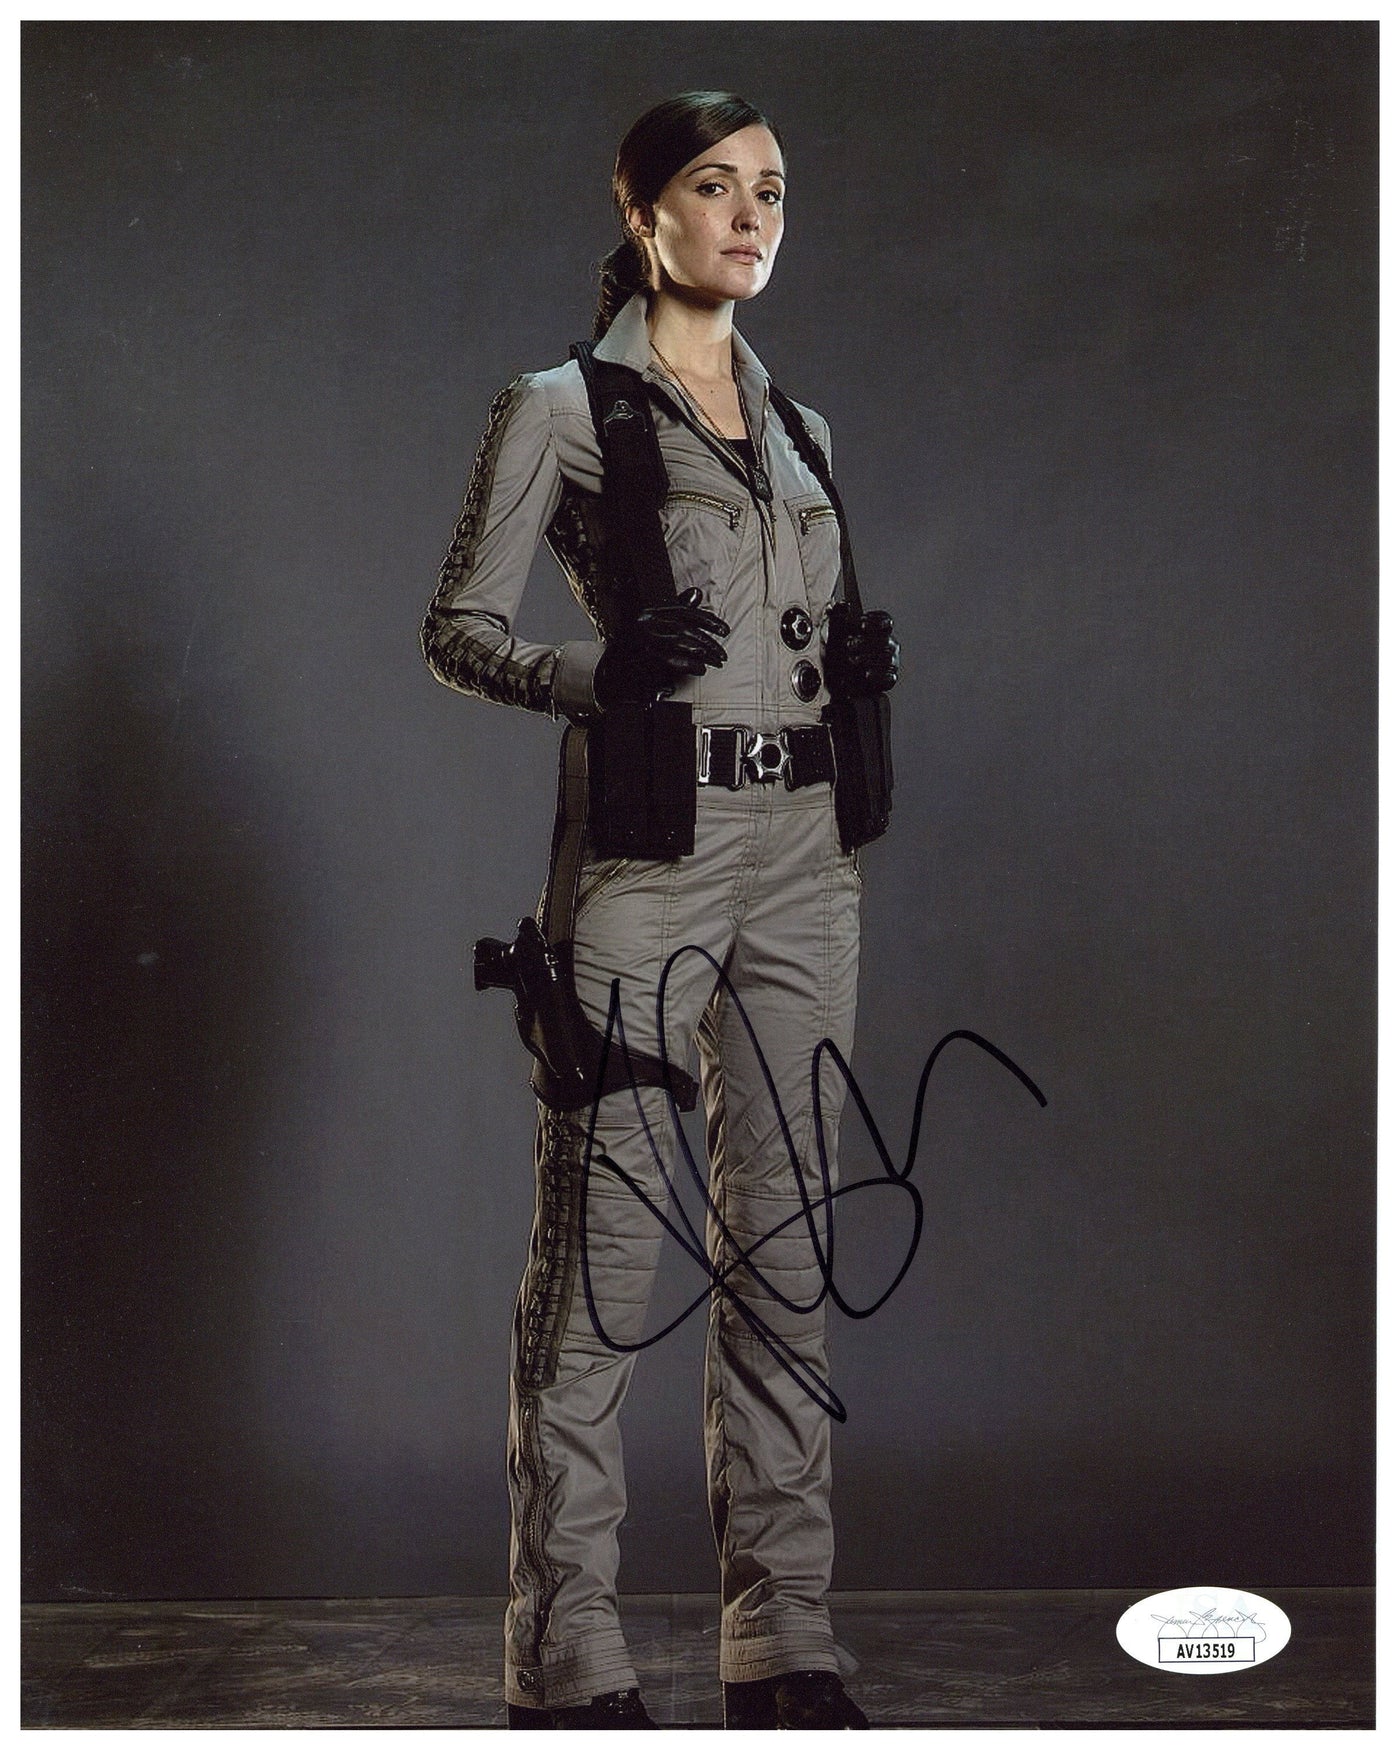 Rose Byrne Signed 8x10 Photo X-Men Autographed JSA COA